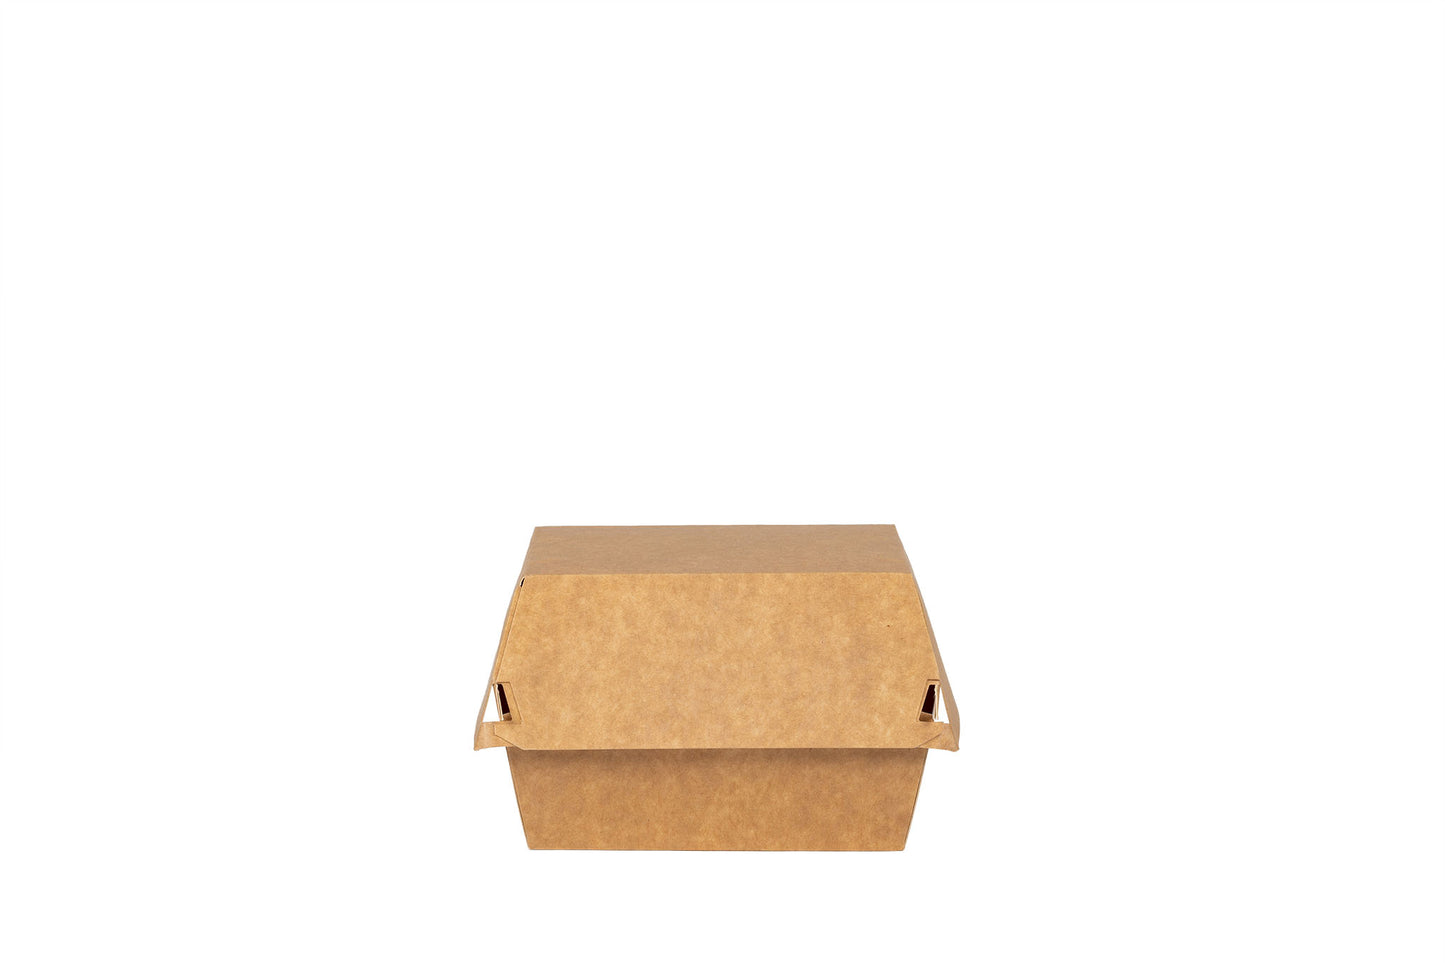 Das Bild zeigt die geschlossene Hamburger Box vertrieben von der Malik Verpackungen GmbH Hanau. Die Hamburger-Box ist aus Pappe. Die Farbe der Burger Box ist braun. Das Bild ist frontal von vorne aufgenommen. Fotograf: Detlev Steinhilber (detis.pix)